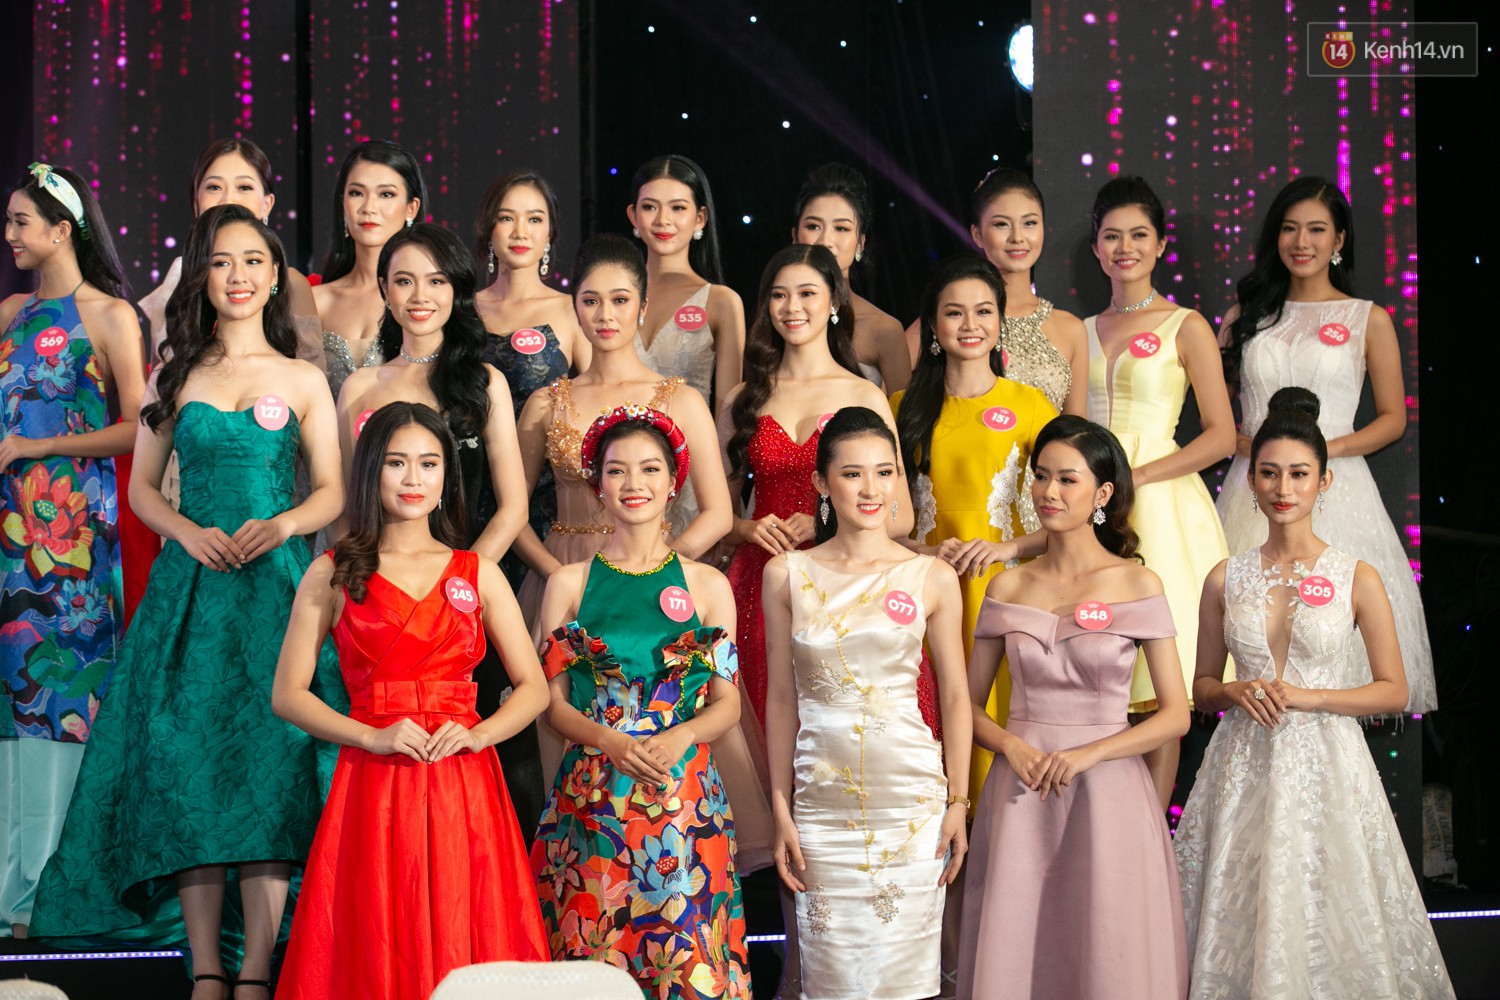 Trước thềm chung kết, hé lộ cận cảnh vương miện, quyền trượng giá trị của Tân Hoa hậu Việt Nam 2018 - Ảnh 13.